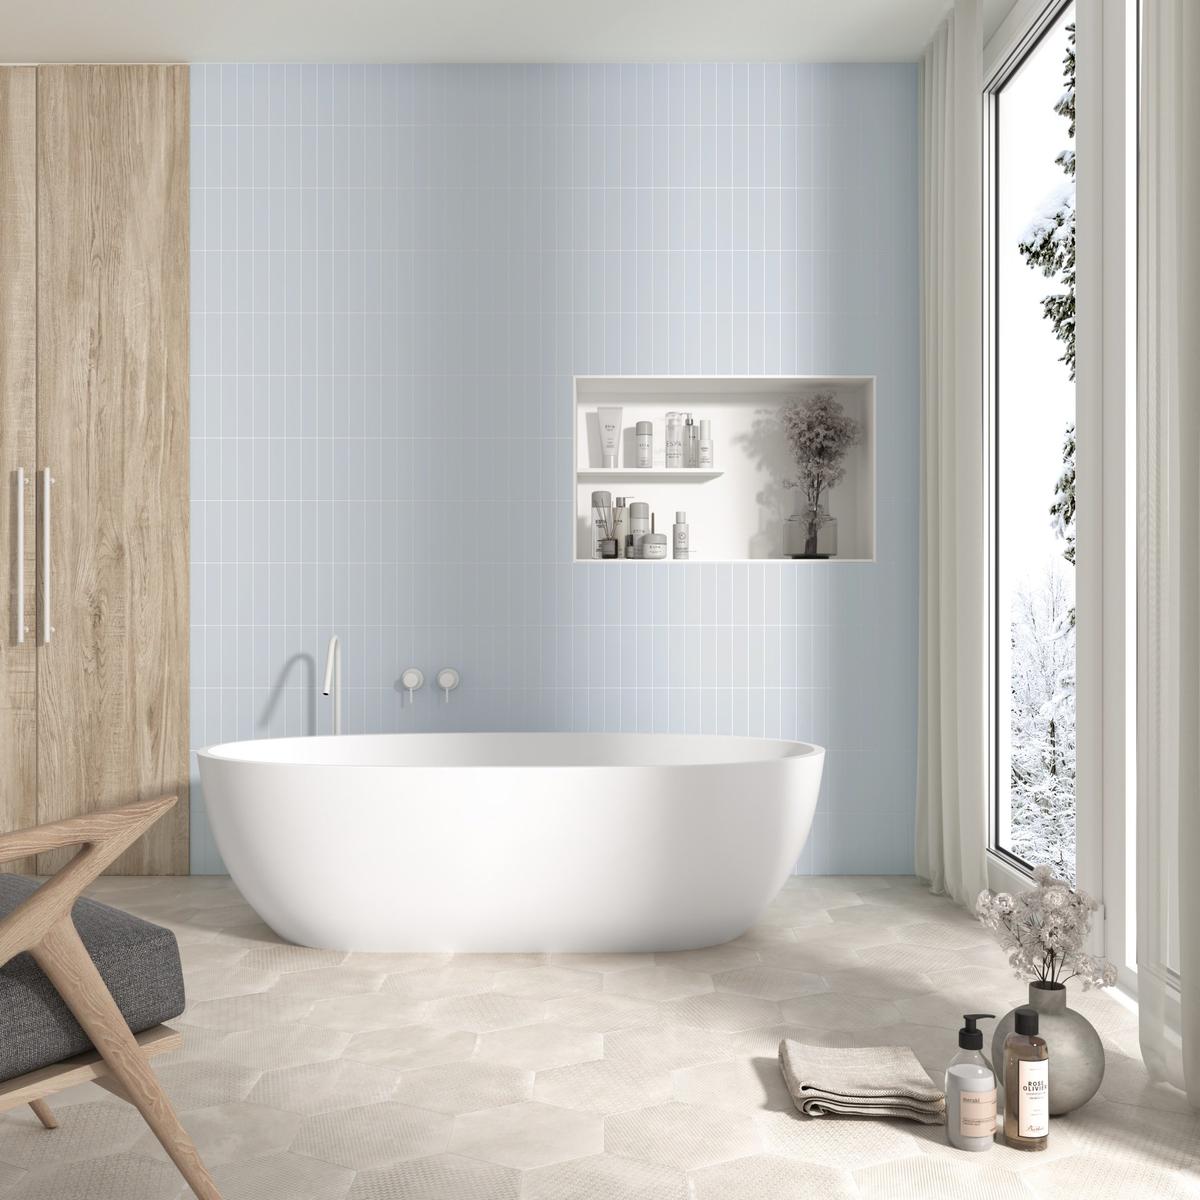 Carrelage unis bleu clair dans une salle de bain épurée avec baignoire blanche, revêtements bois et touches de gris, éclairée par une fenêtre